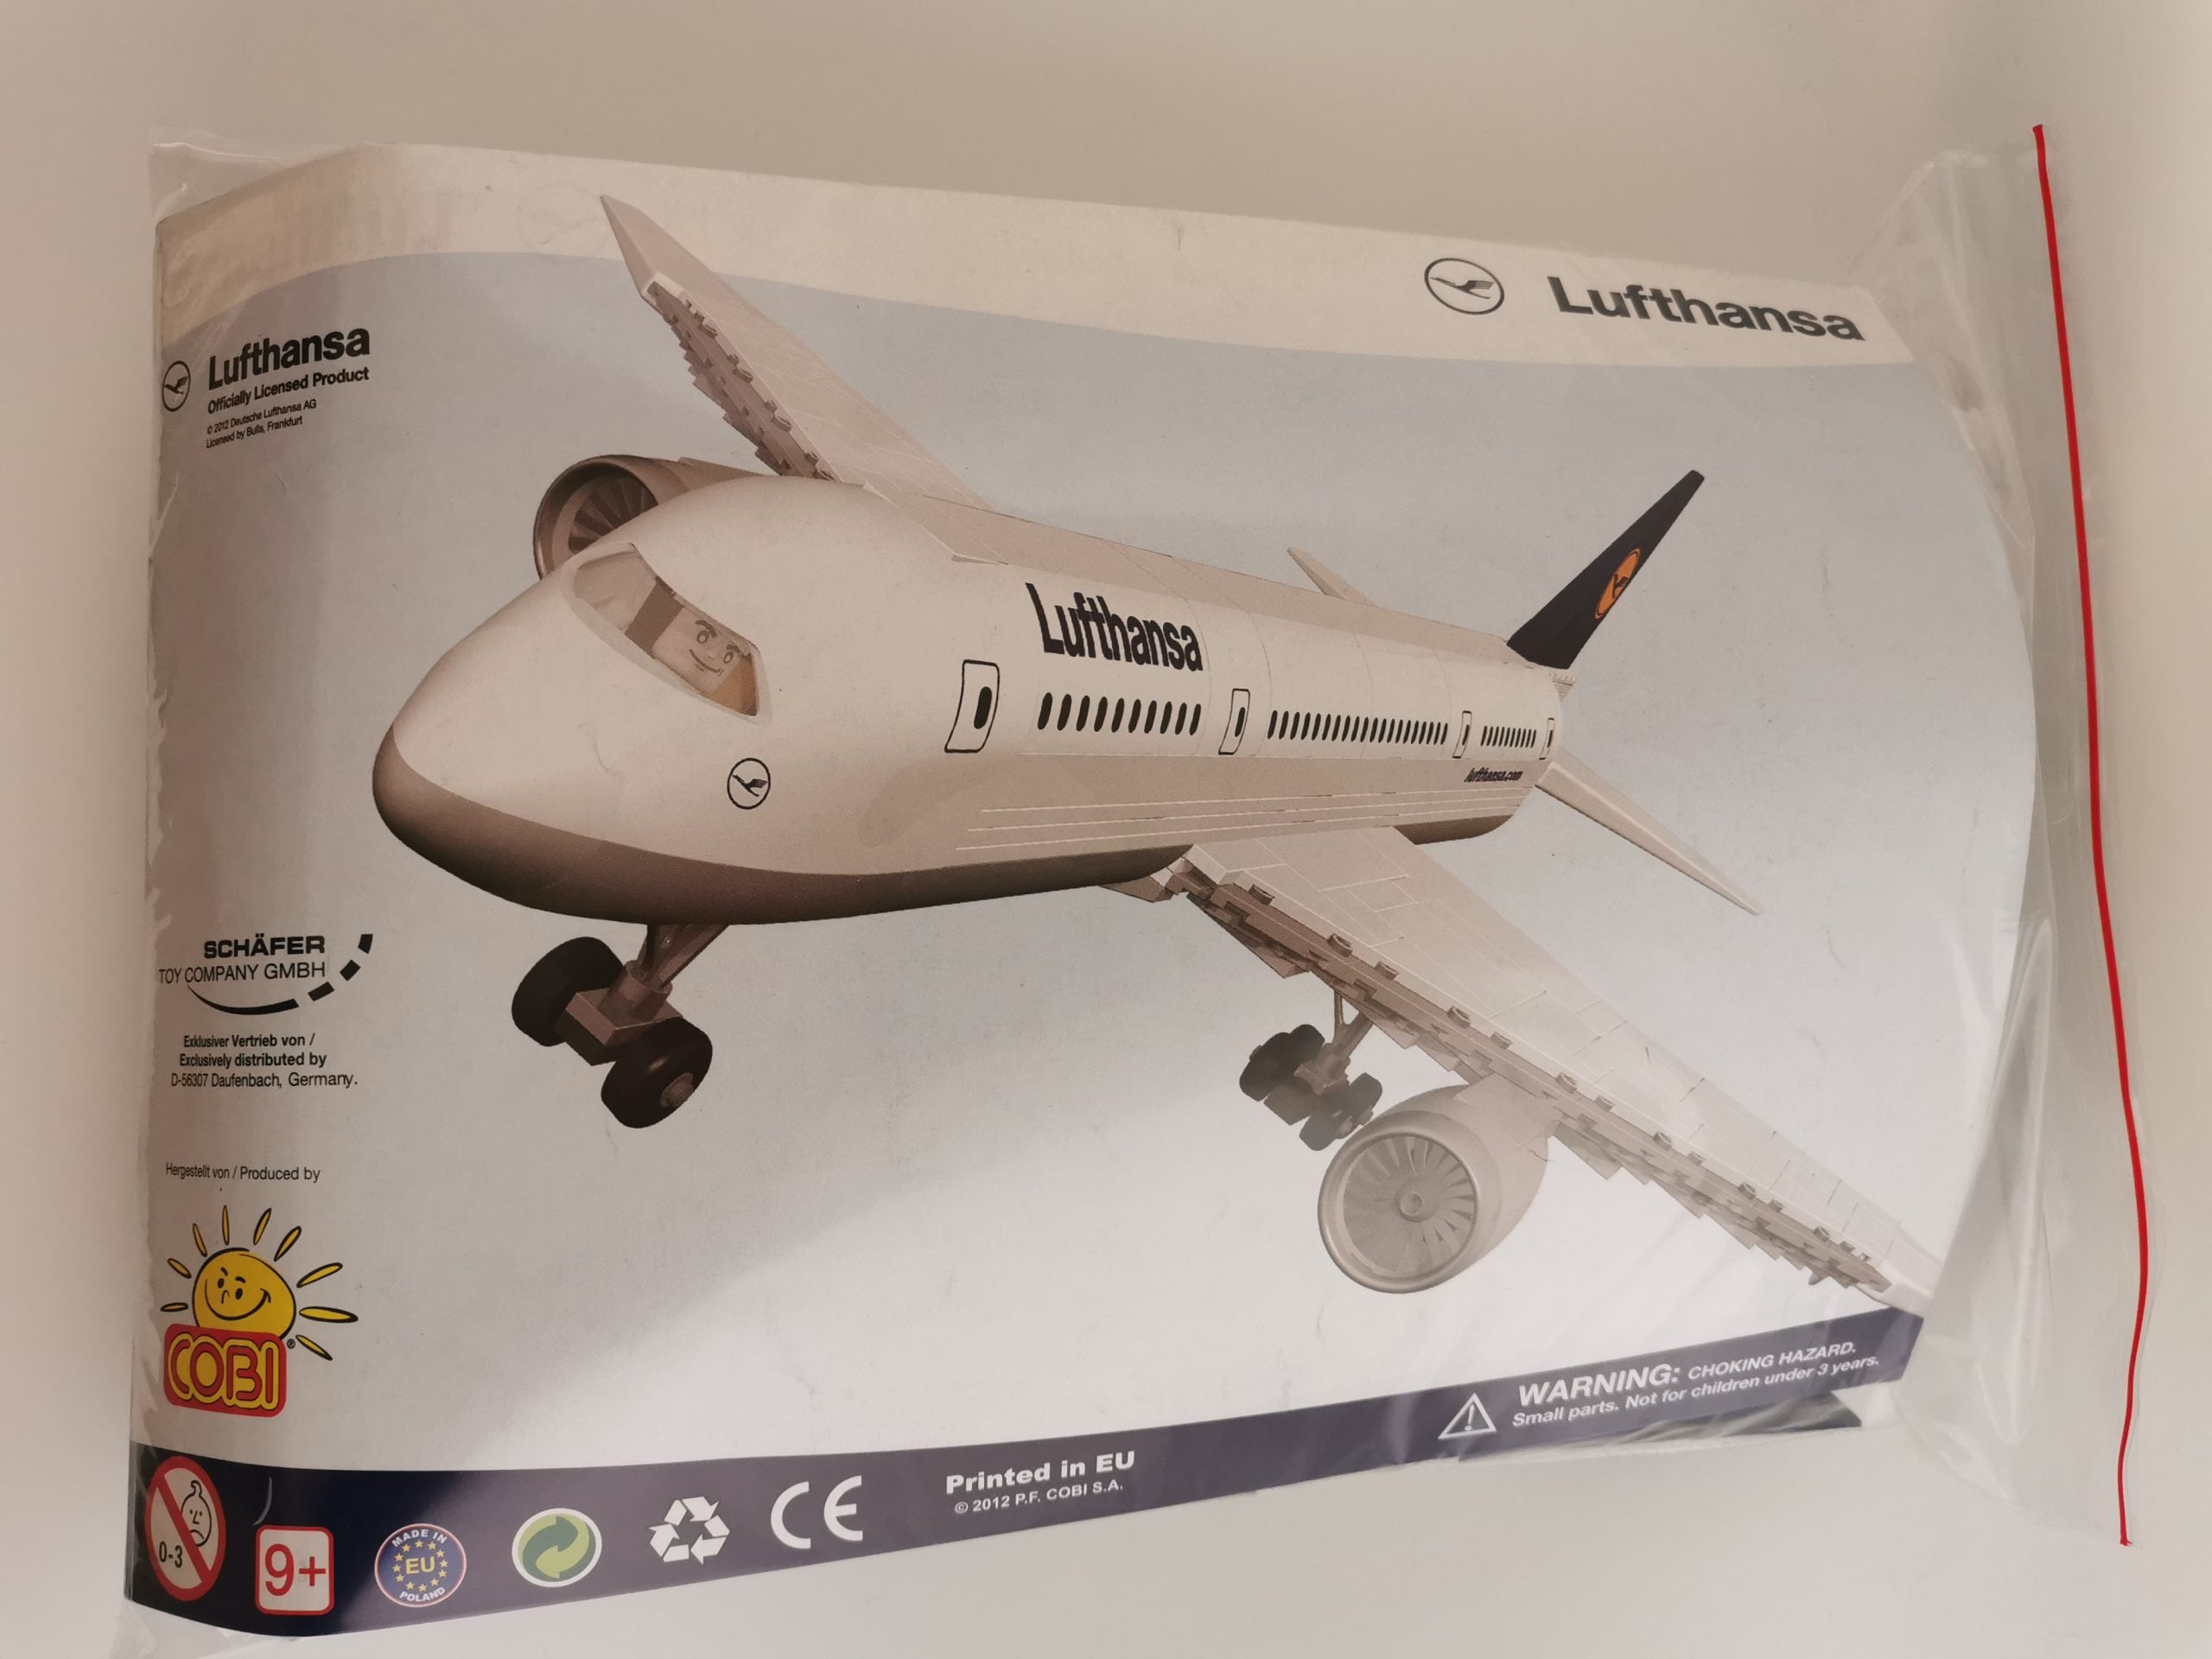 Cobi 099794 Lufthansa LIMITIERT gebraucht